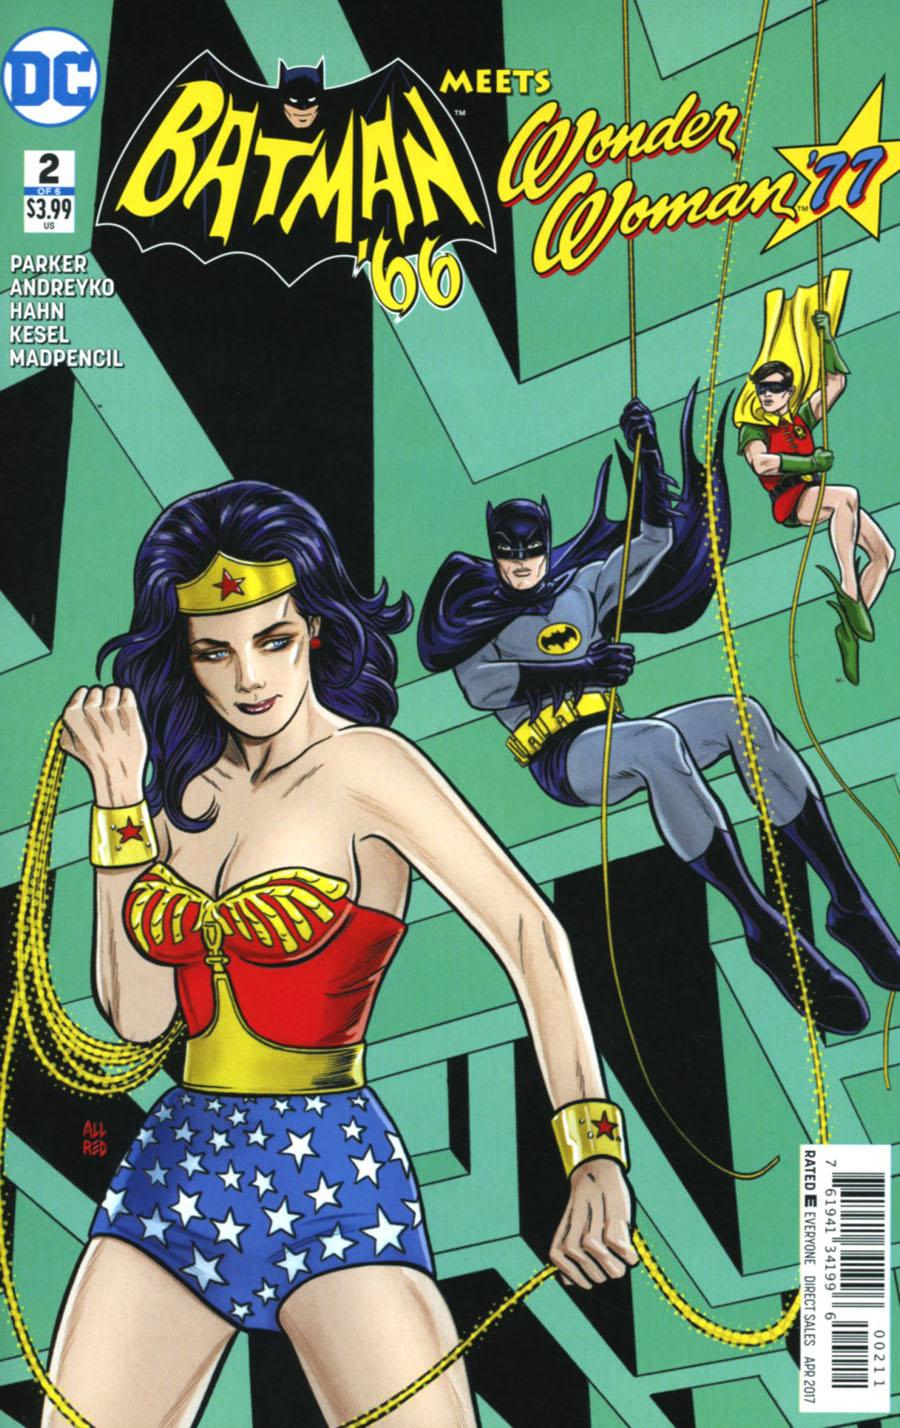 Batman 66 Meets Wonder Woman 77 Vol. 1 #2